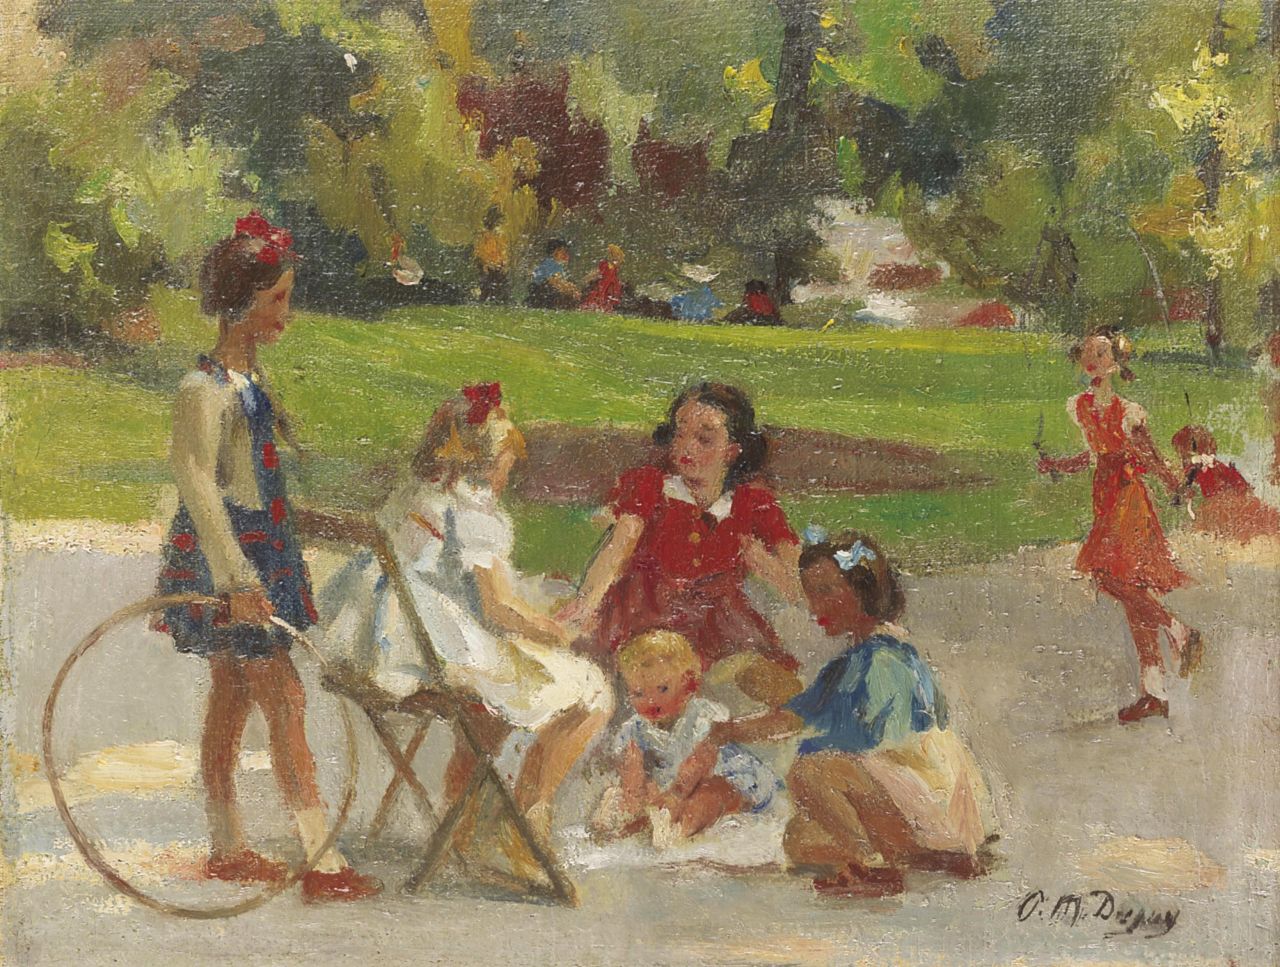 Dupuy P.M.  | Paul Michel Dupuy, Children playing in the Parc Monceau, Paris, oil on canvas 28.6 x 37.2 cm, signed l.r.